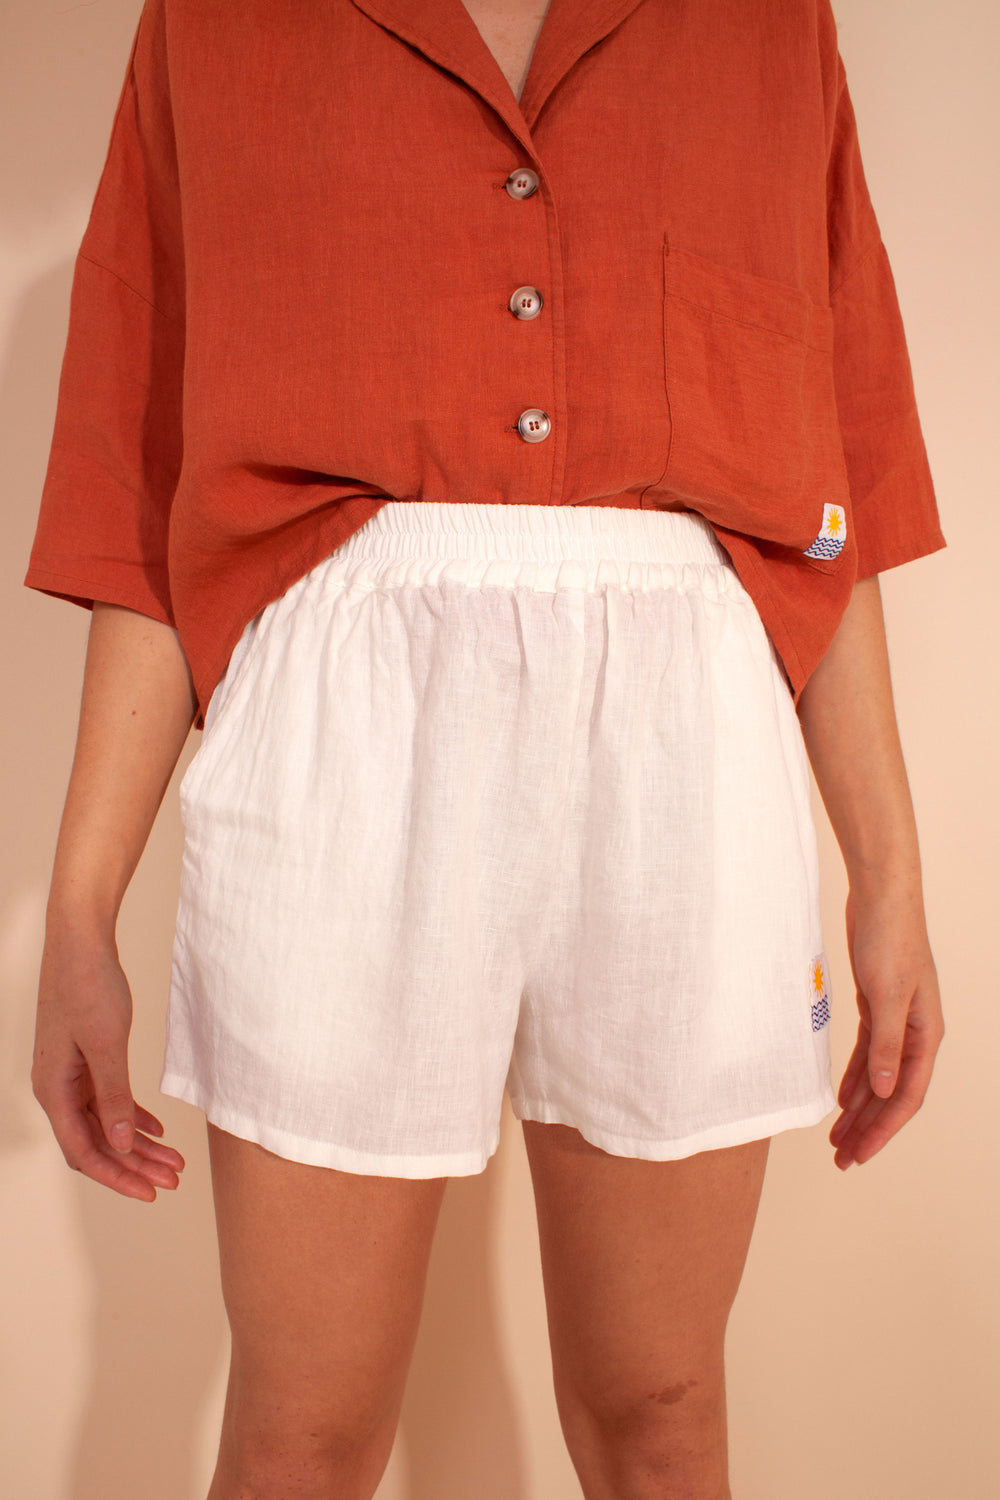 Basic Linen Shorts Ivory